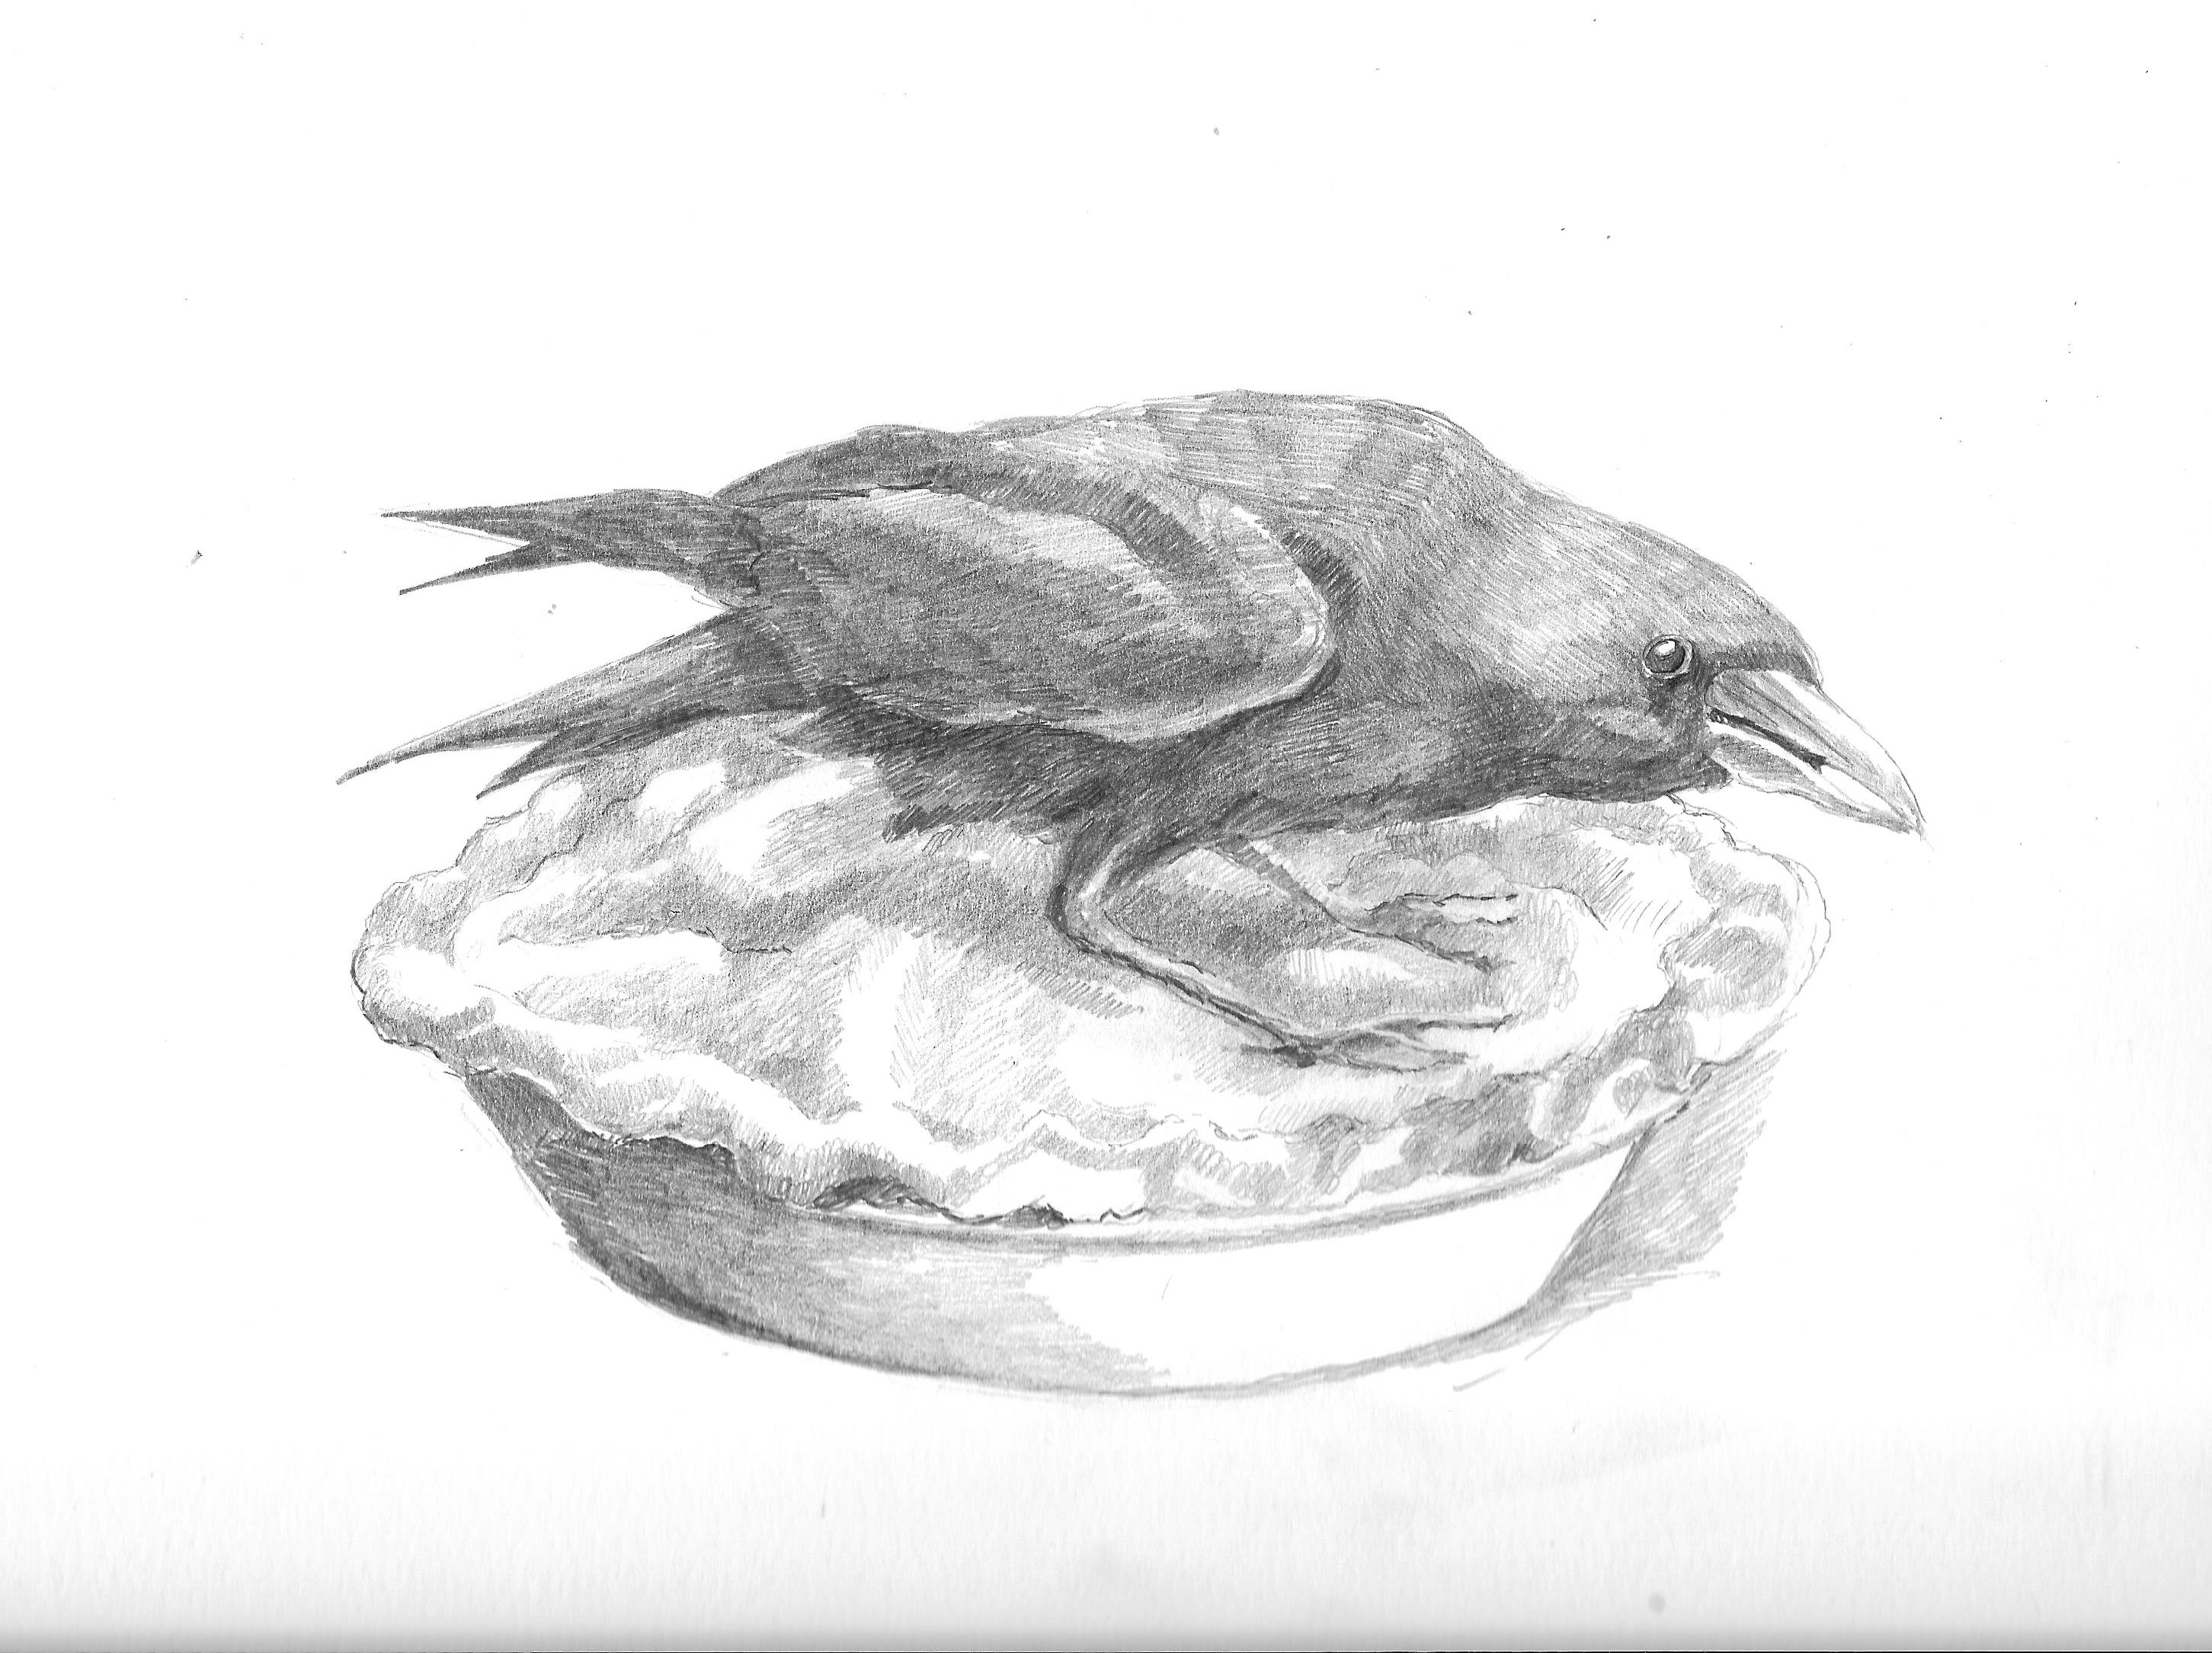 Crow on a pie